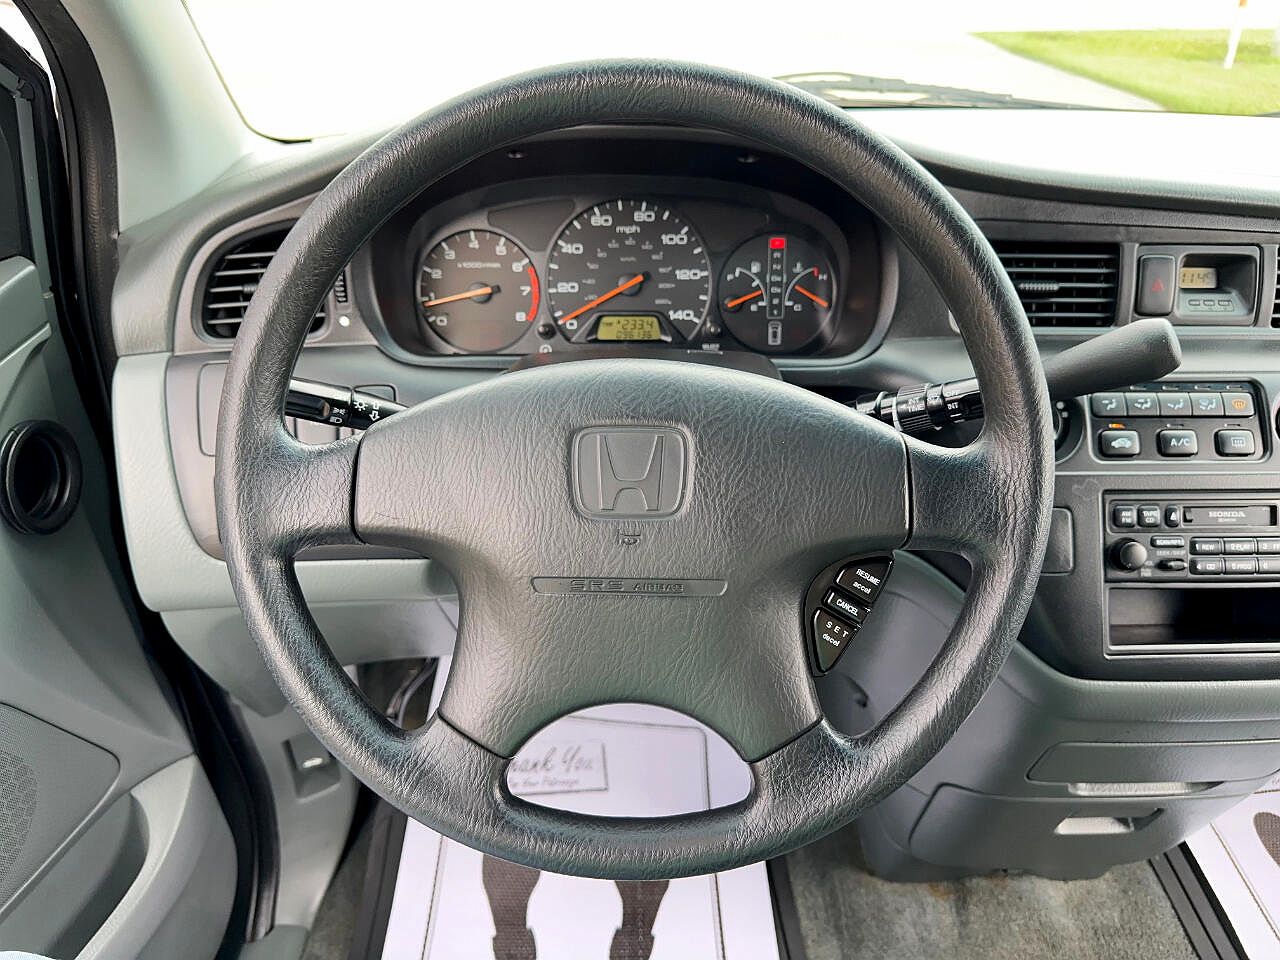 2001 Honda Odyssey LX image 49